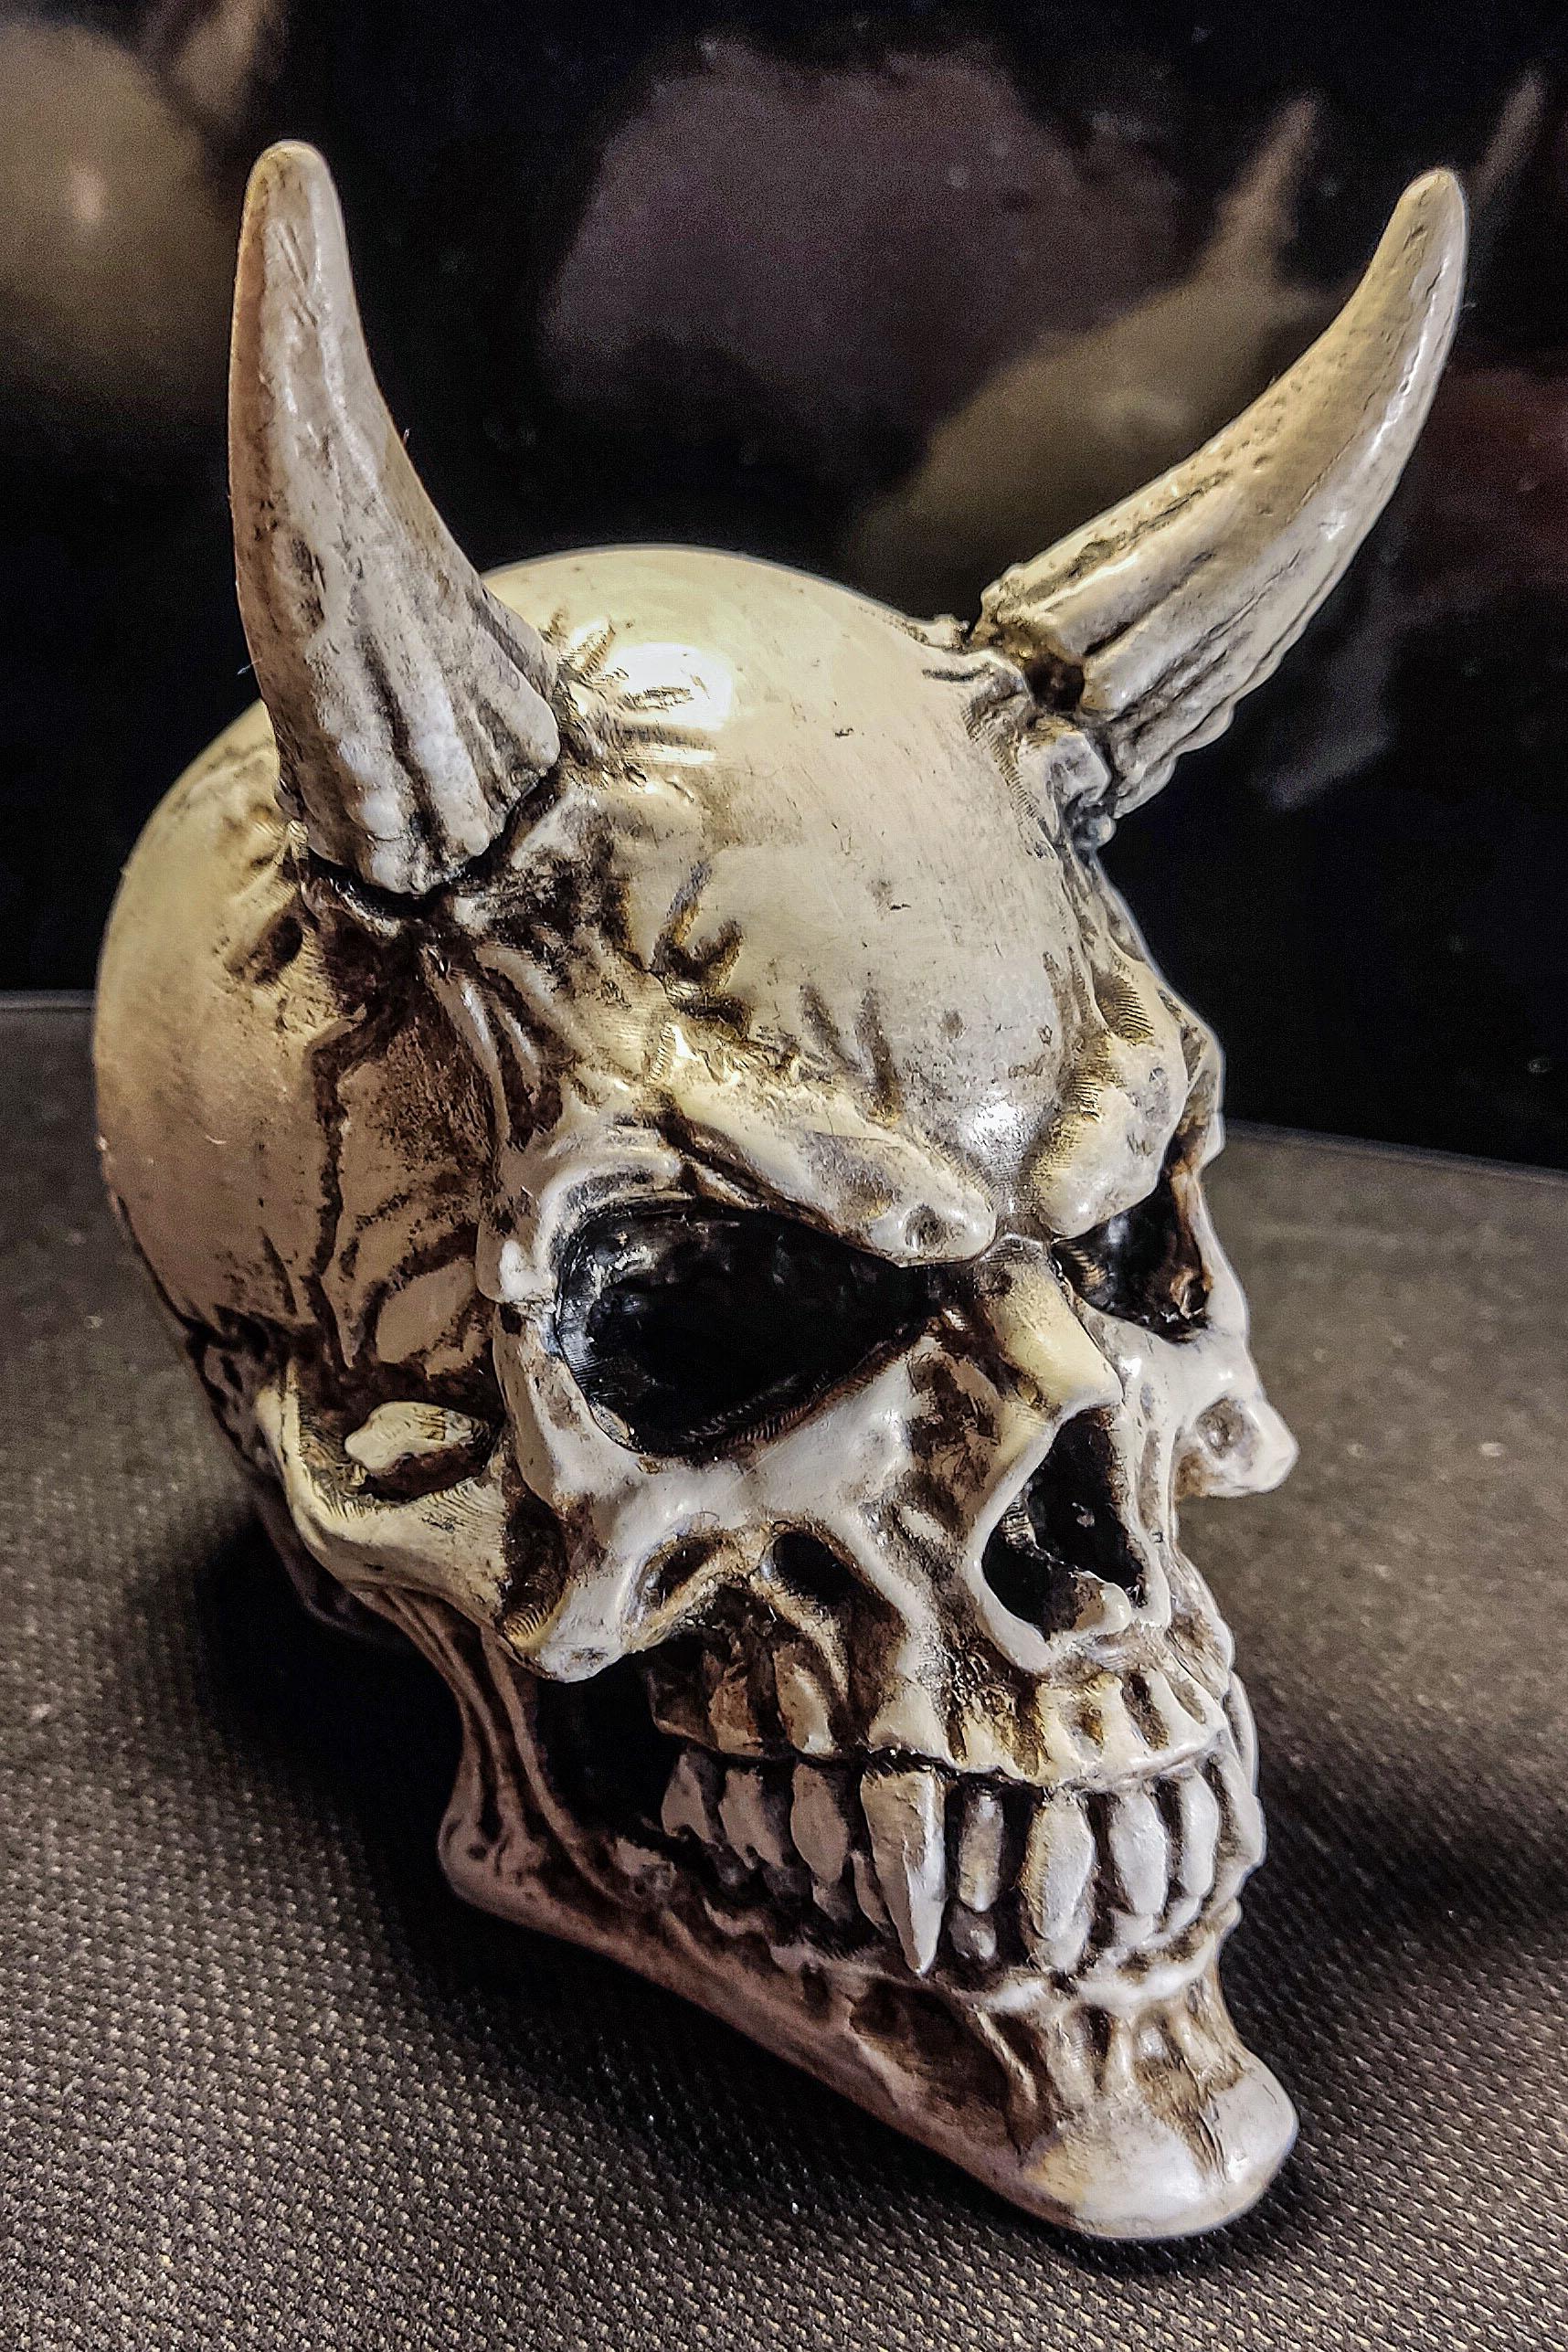 Demon Skull - Decoration - Great Skull Model !
Thank You! - 3d model